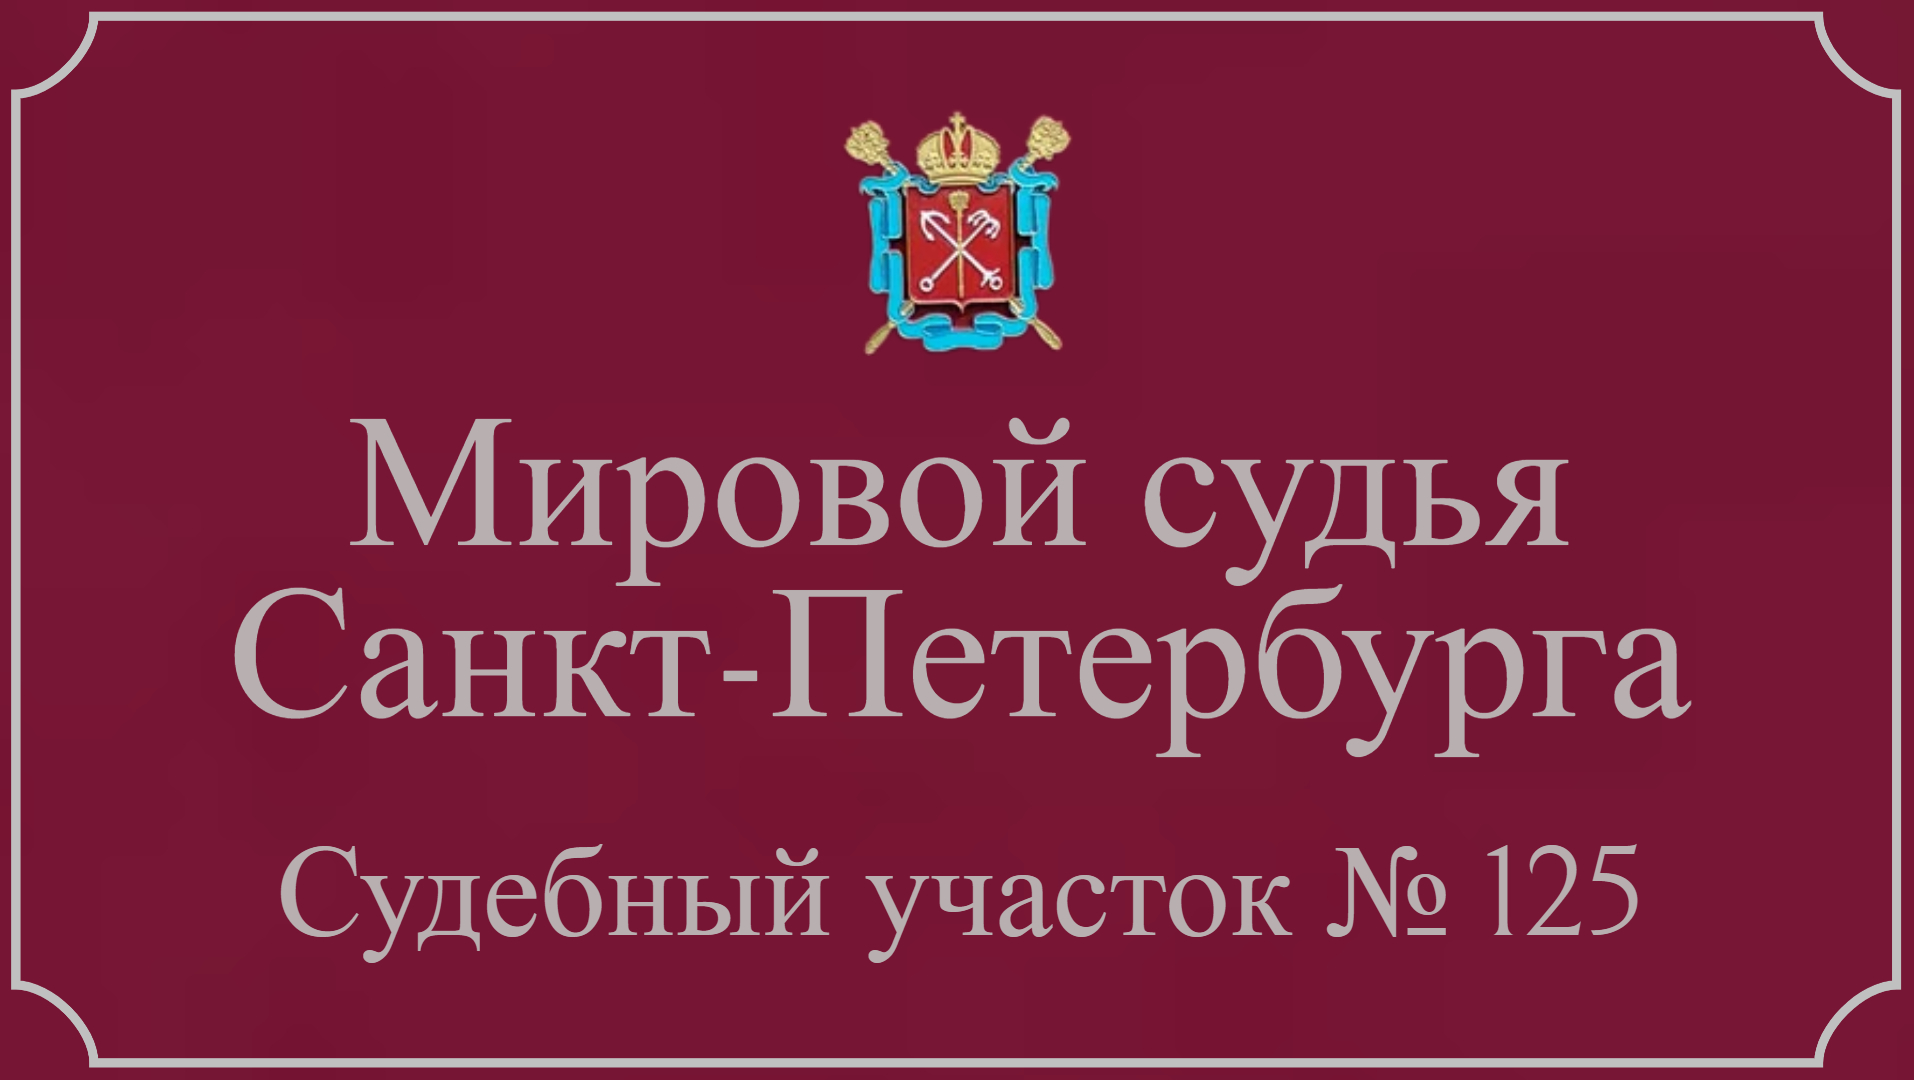 Информация по 125 судебному участку в Санкт-Петербурге.